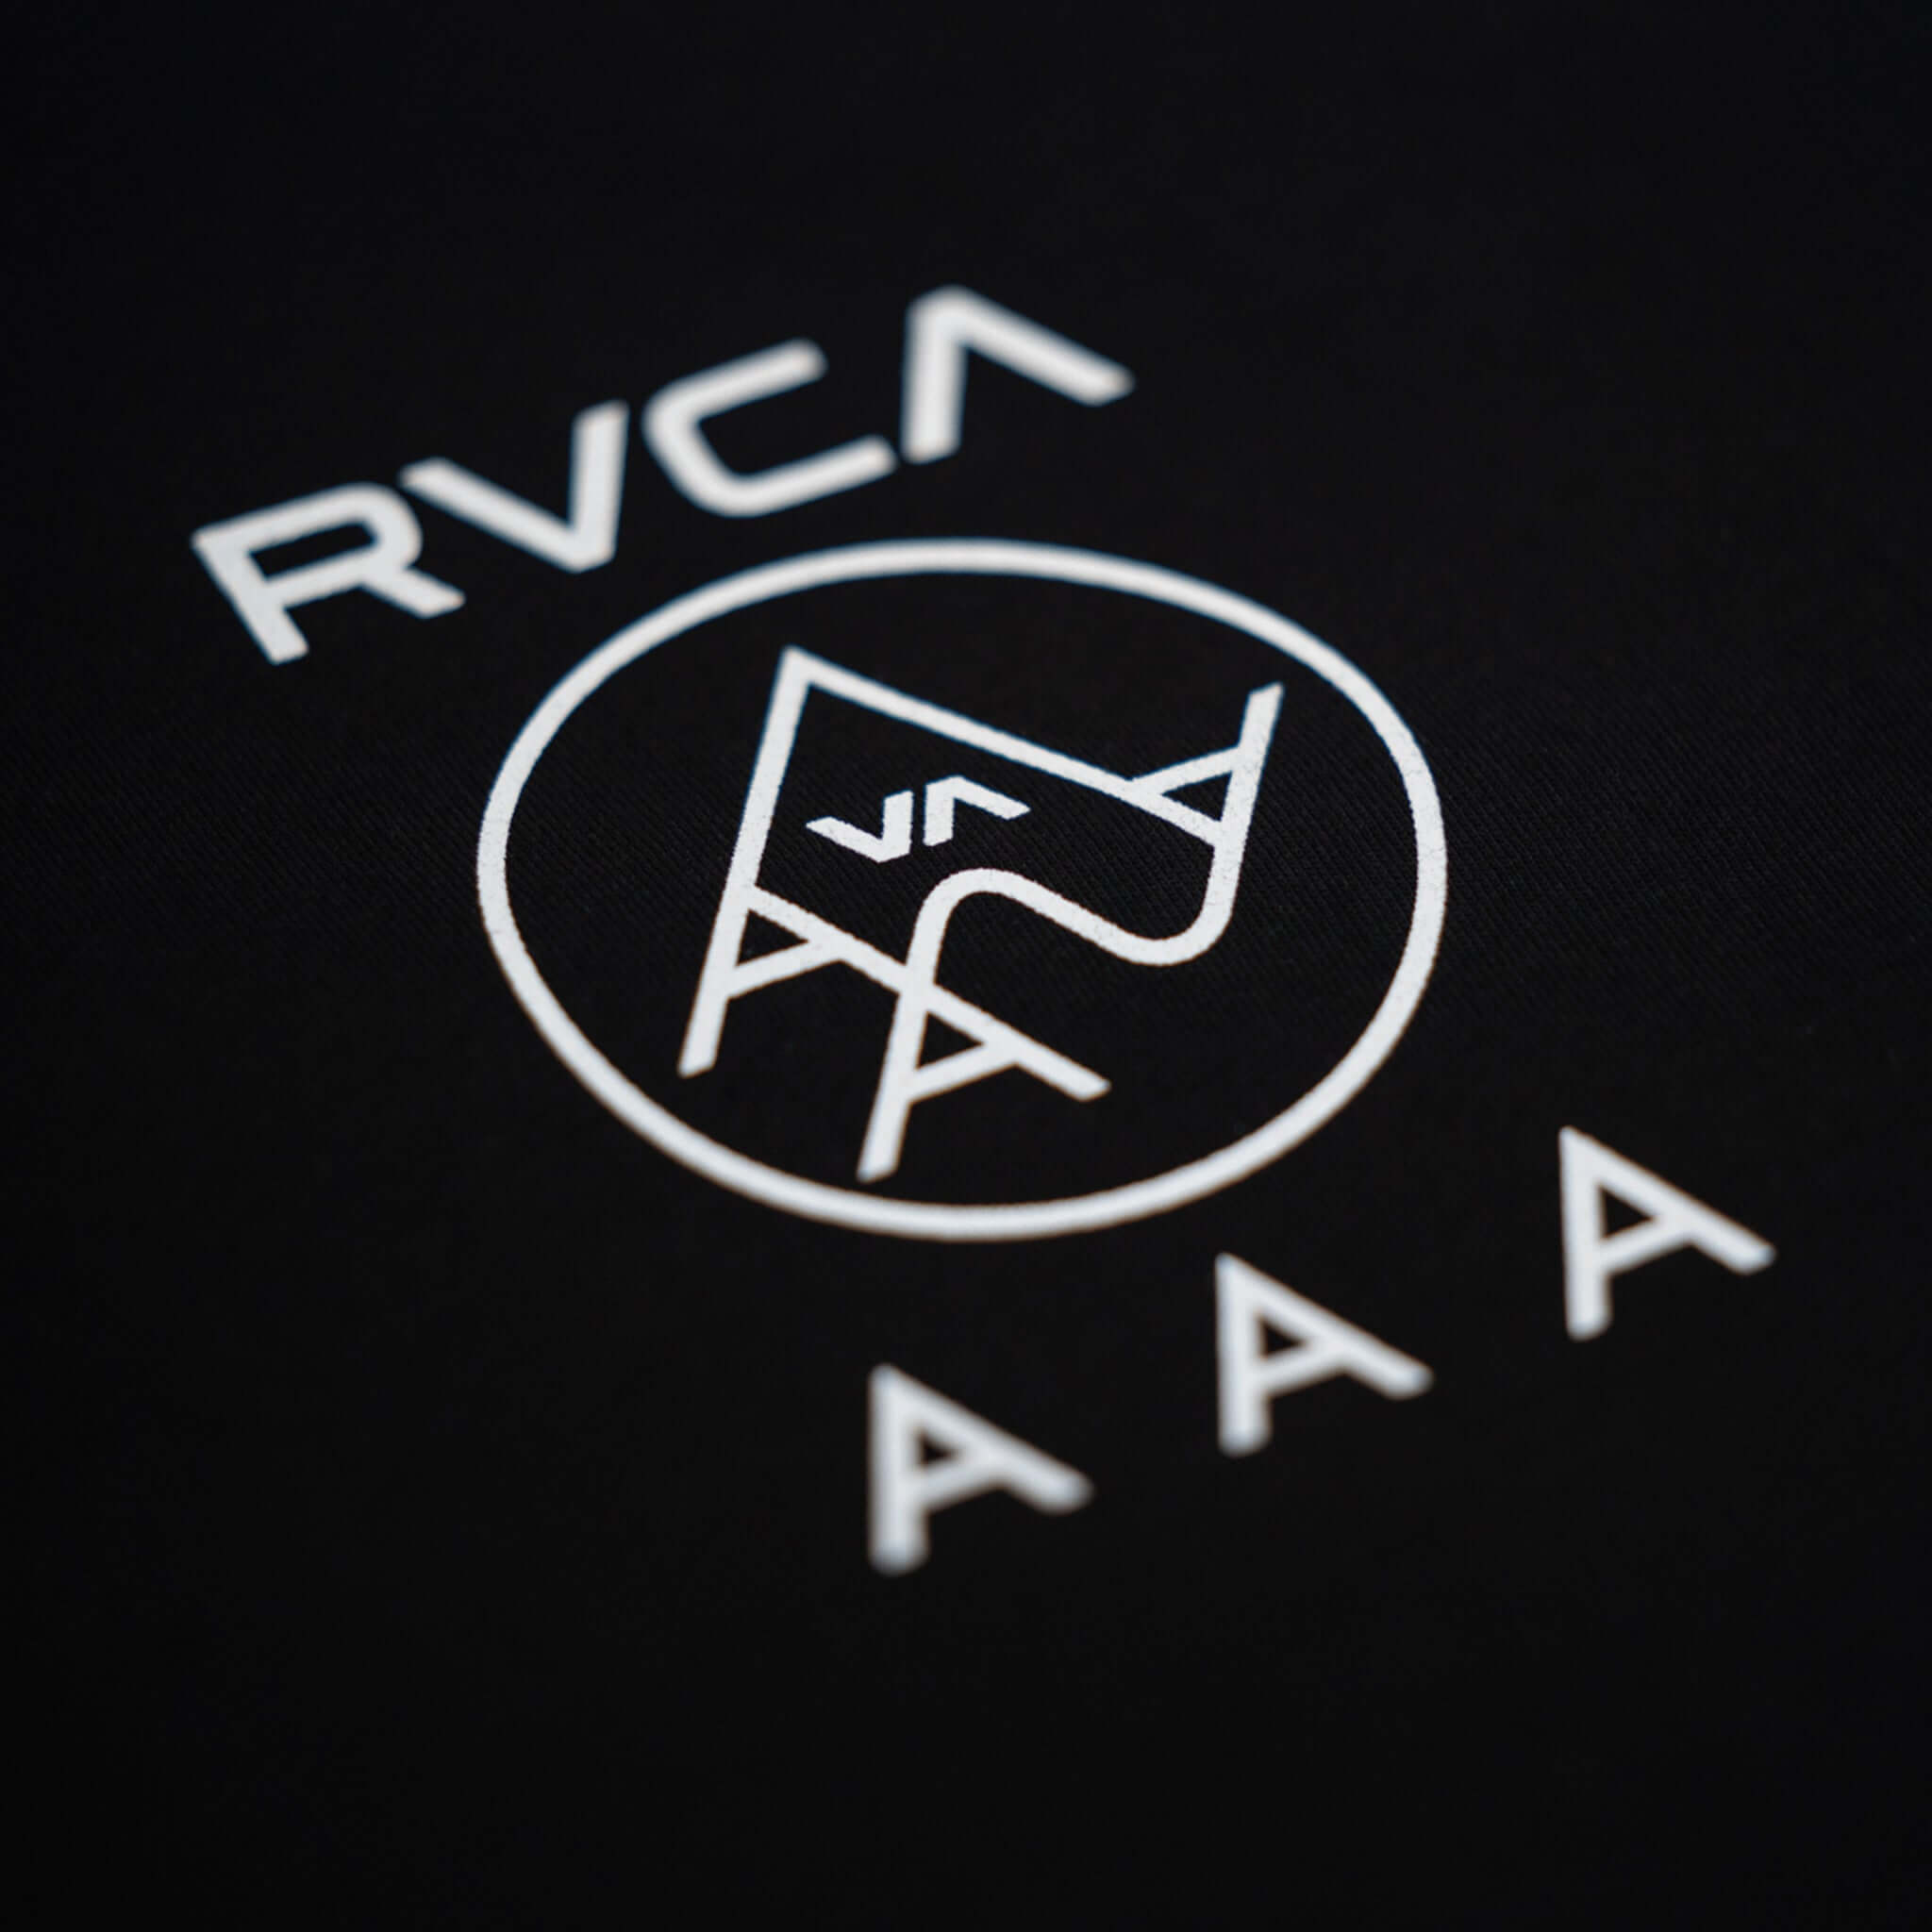 Le t-shirt AAA x RVCA